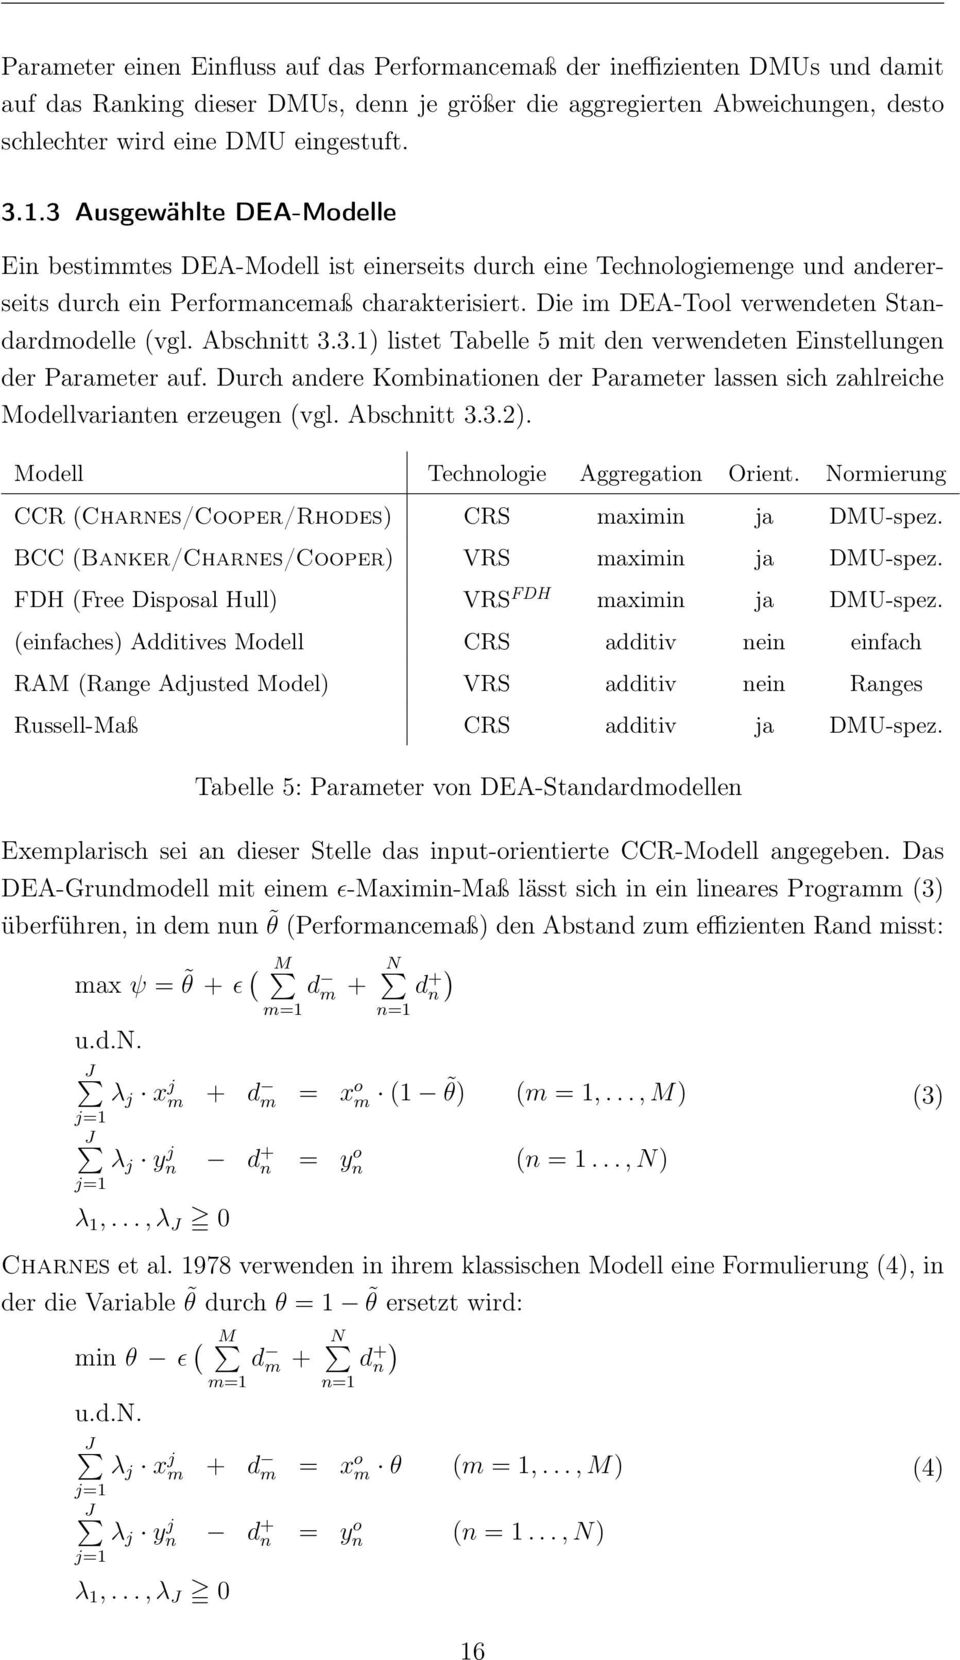 Die im DEA-Tool verwendeten Standardmodelle (vgl. Abschnitt 3.3.1) listet Tabelle 5 mit den verwendeten Einstellungen der Parameter auf.